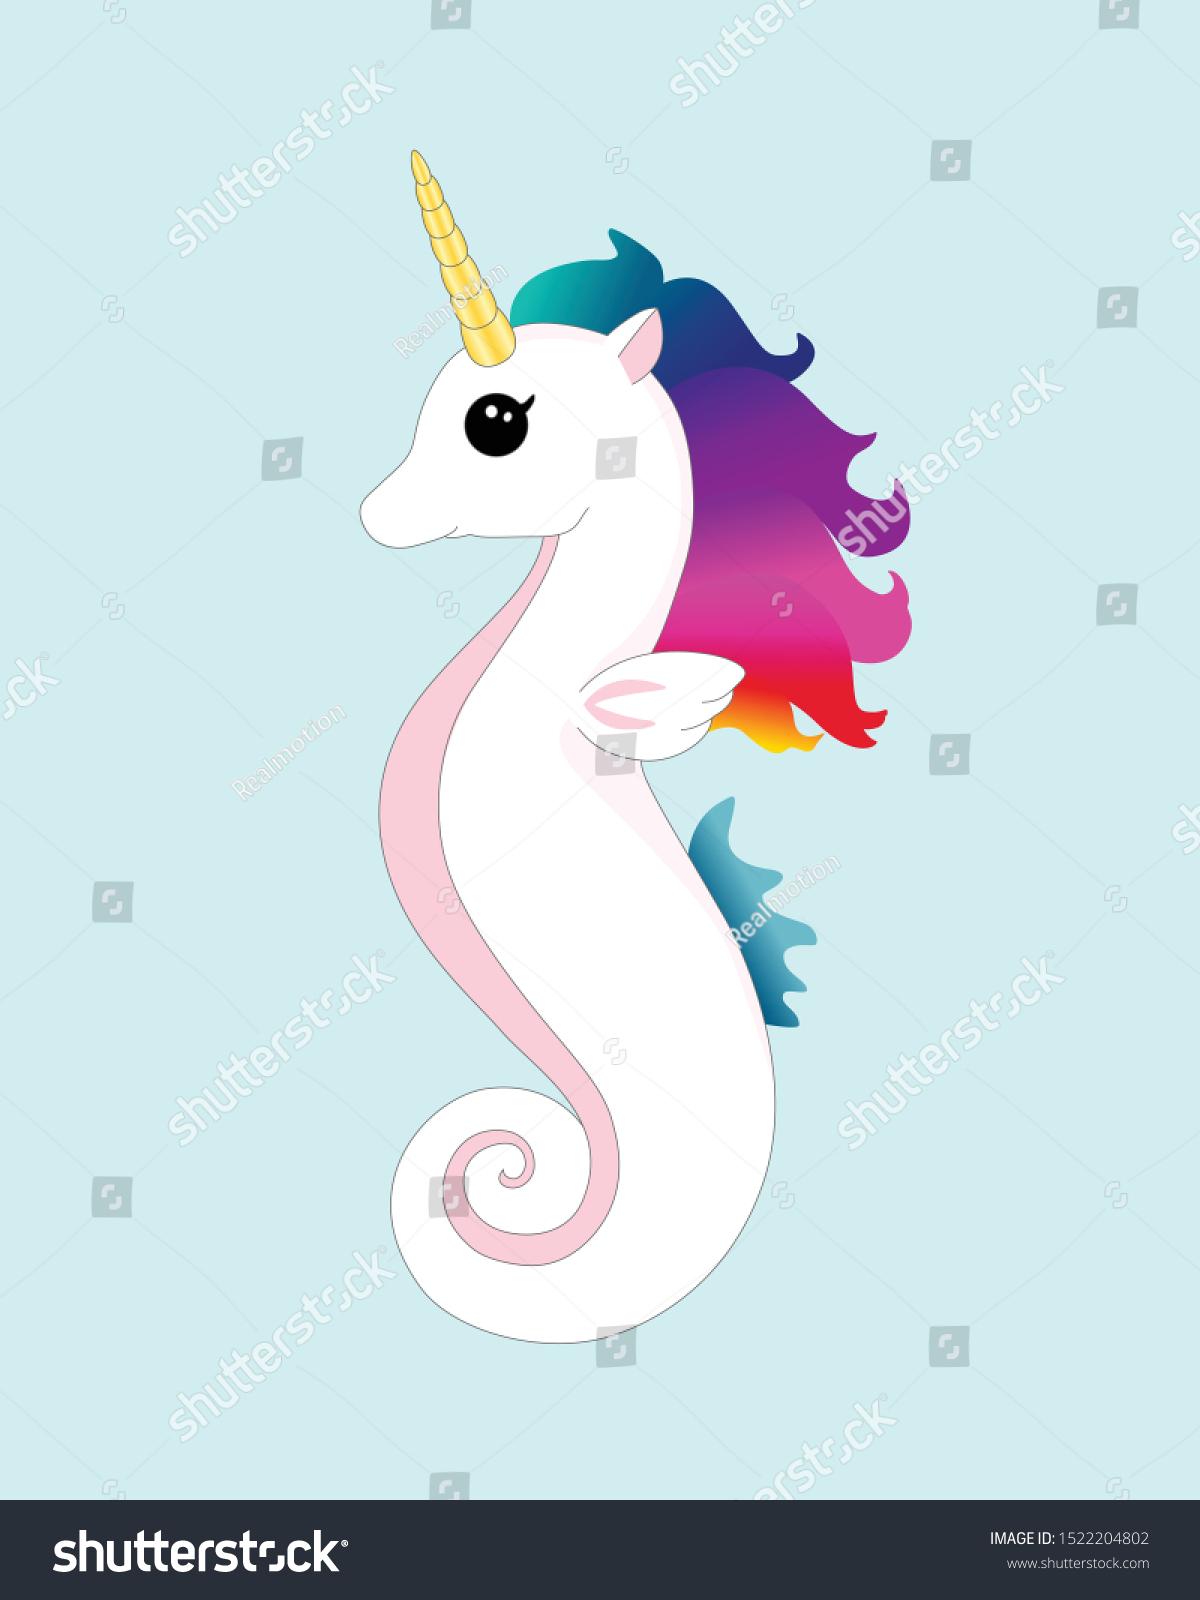 Rainbow unicorn mermaid